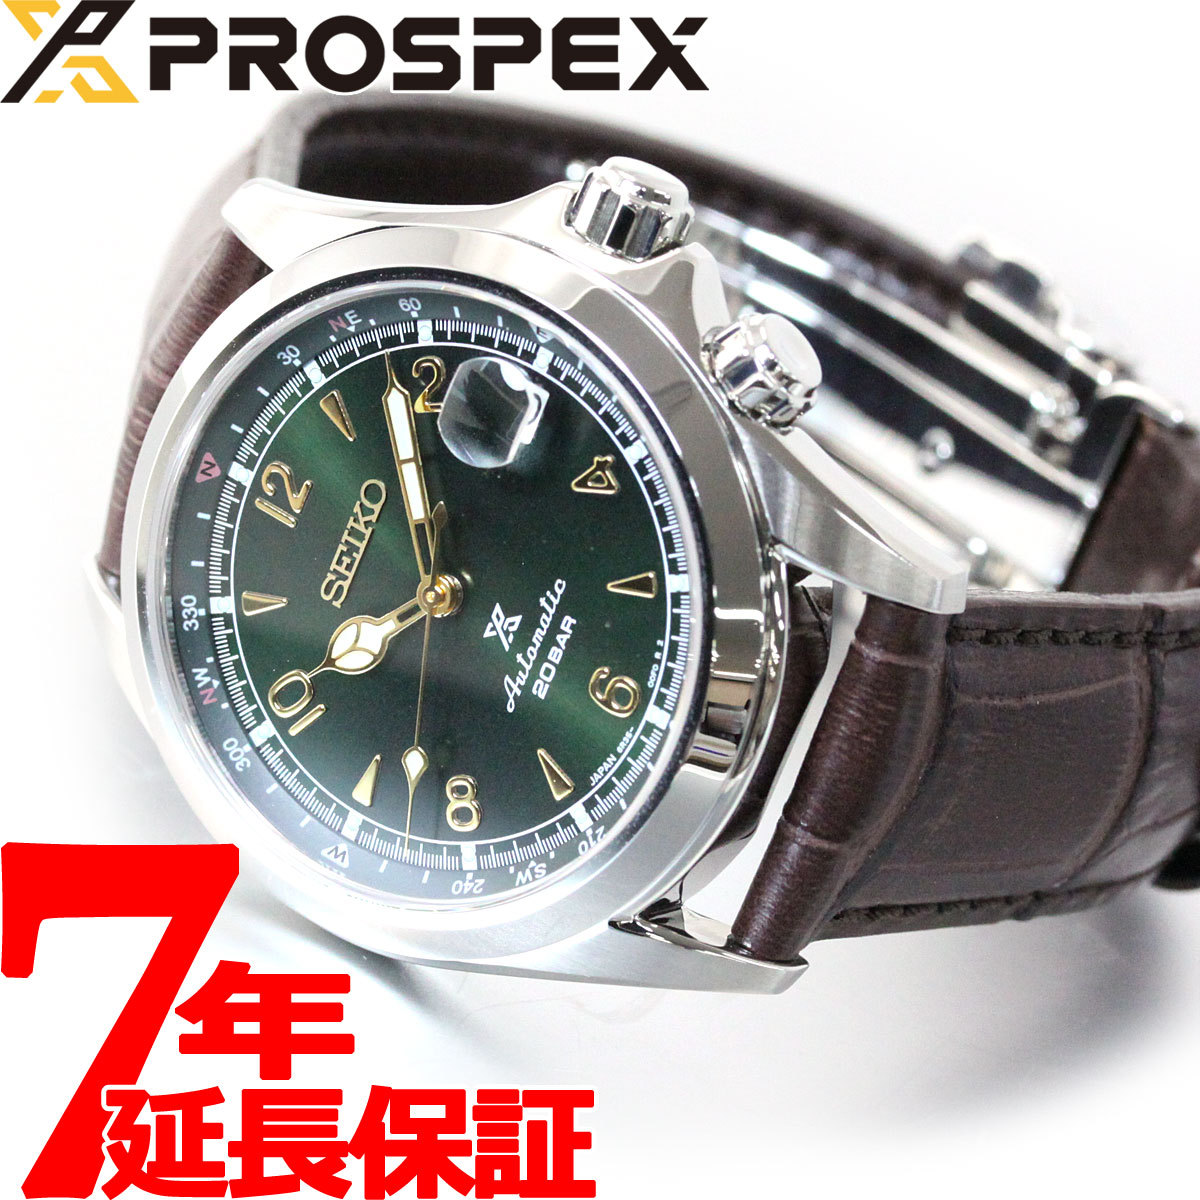  セイコー プロスペックス SEIKO PROSPEX アルピニスト メカニカル 自動巻き コアショップ専用 流通限定モデル 腕時計 メンズ SBDC091